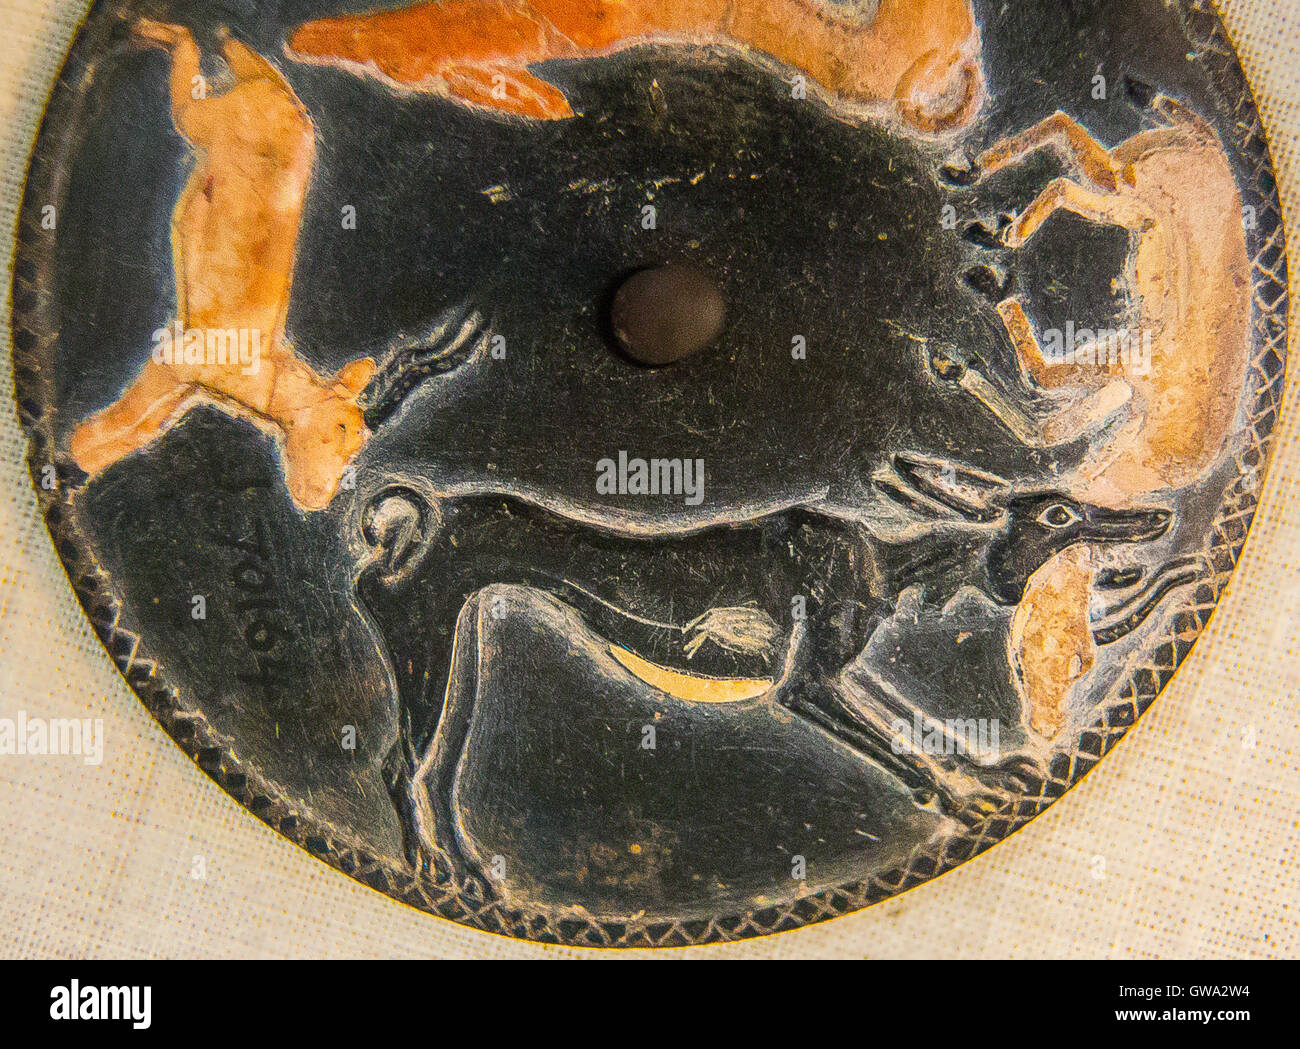 Egipto, El Cairo, el Museo Egipcio, el disco giratorio de la tumba de Hemaka, Saqqara, la primera dinastía, con perros cazar gacelas. Foto de stock